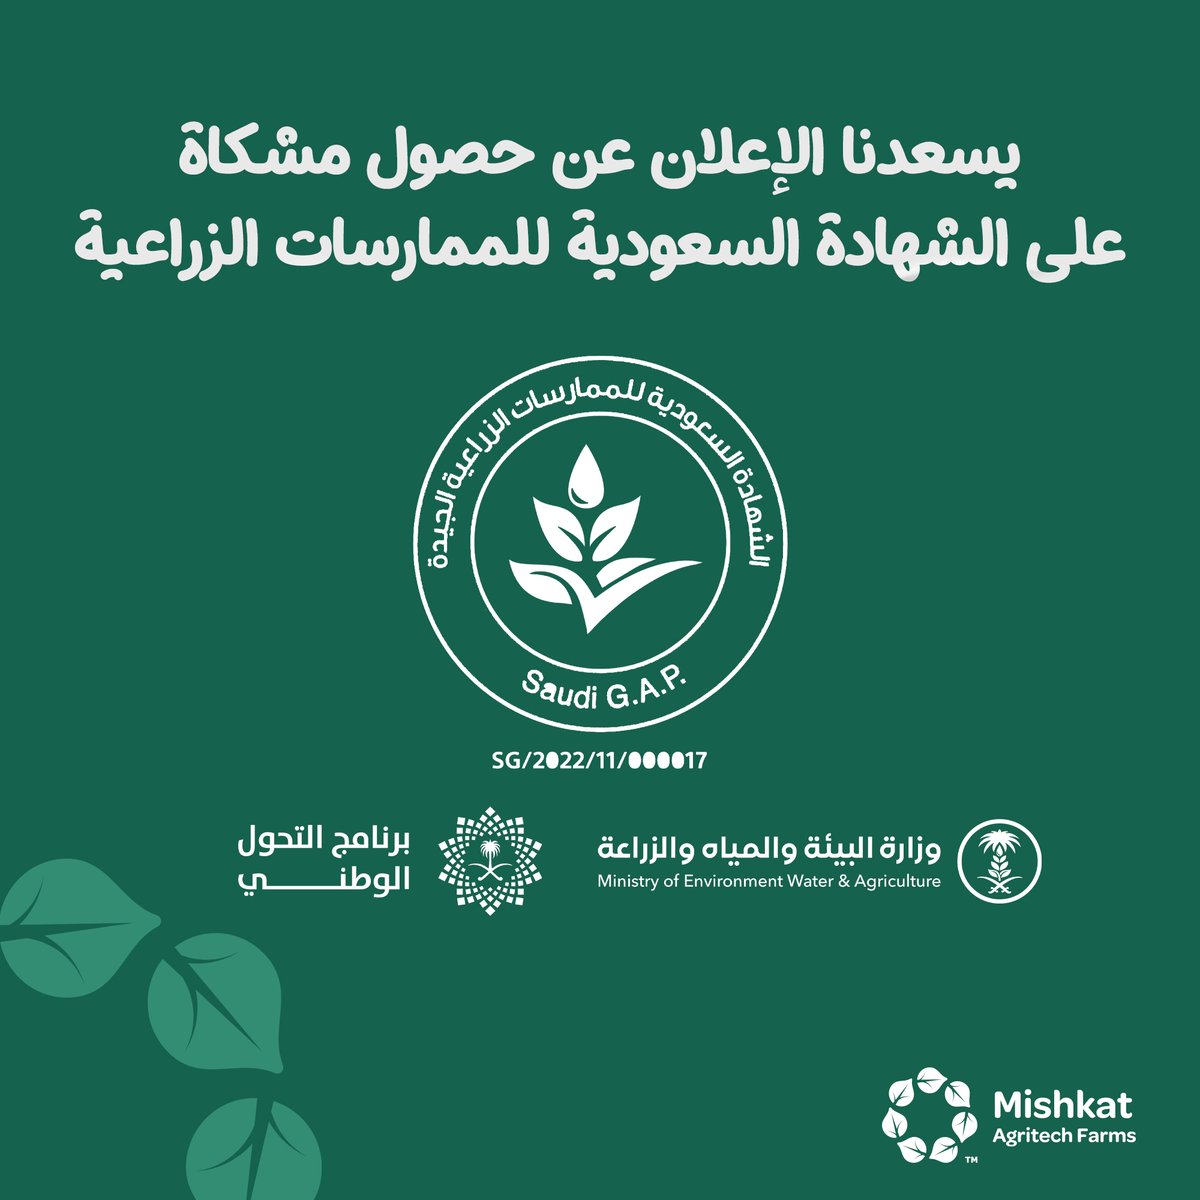 بكل الفخر نُعلن عن حصول مشكاة على الشهادة السعودية للممارسات الزراعية الجديدة 🥰🪴 #Mishkat #Farm #Saudi_GAP_Certification #مشكاة #الشهادة_السعودية_للممارسات_الزراعية_الجديدة